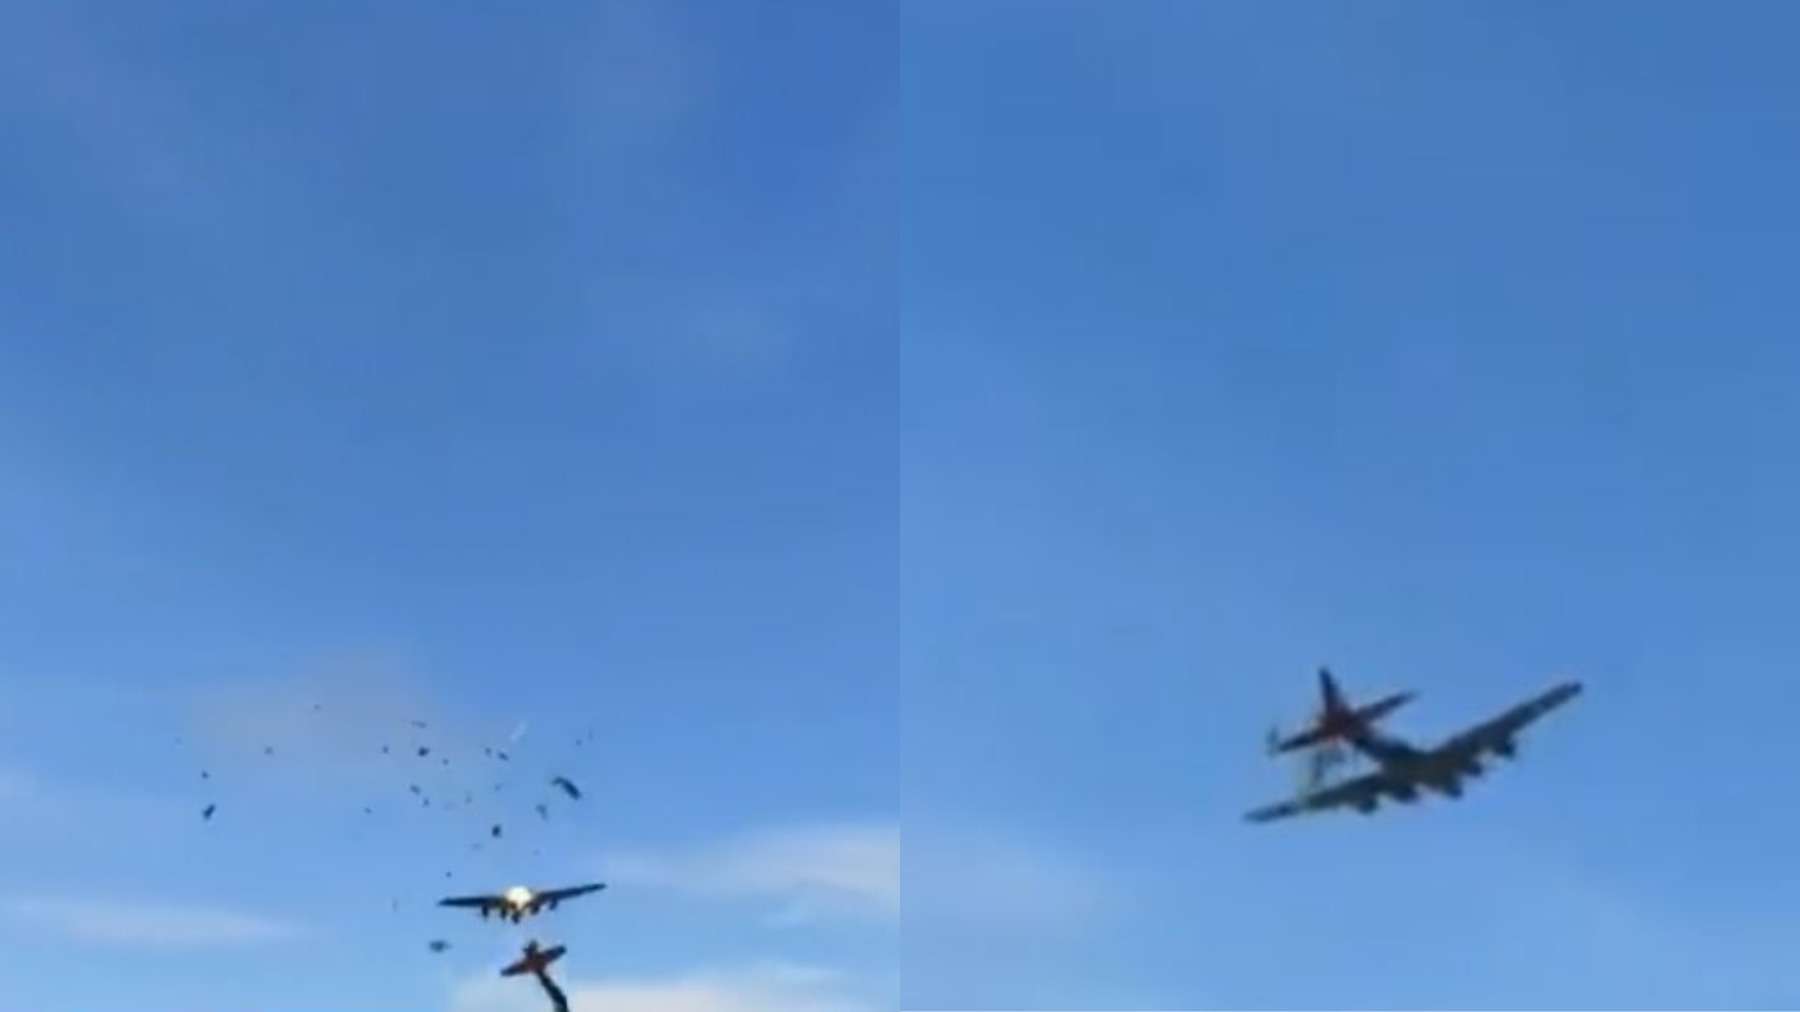 Acidente em show aéreo em Dallas choca espectadores; veja o vídeo - Reprodução Redes Sociais 